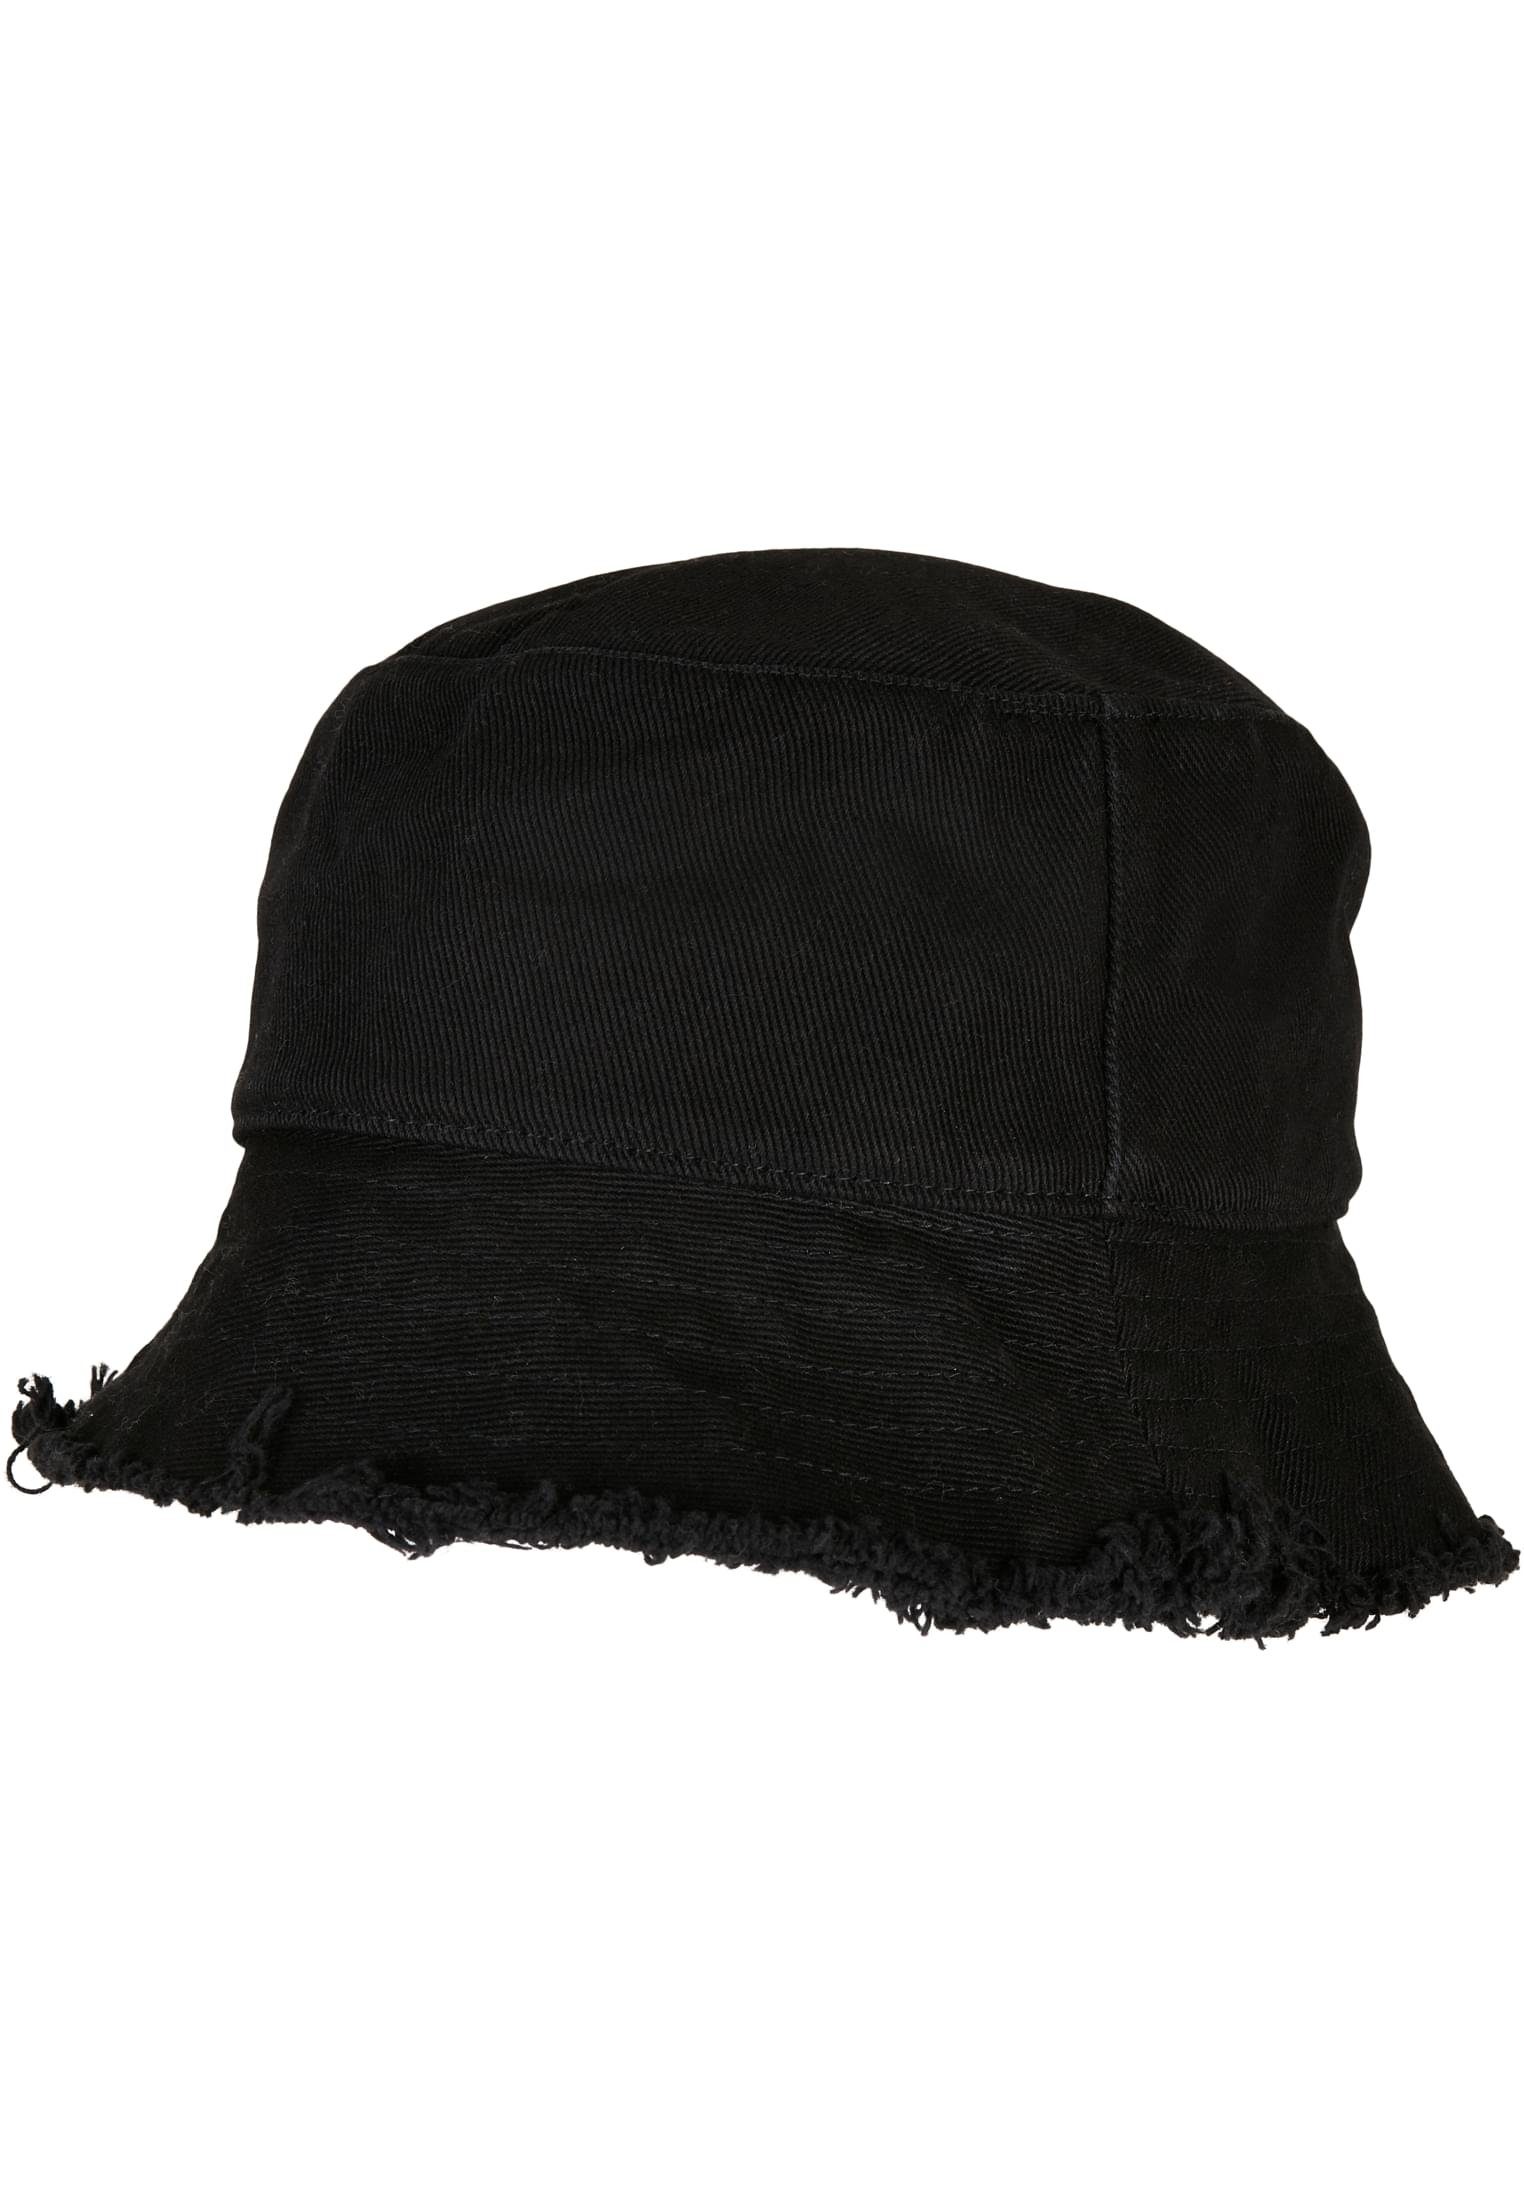 Bucket Accessoires Open Edge Flexfit Cap black Hat Flex